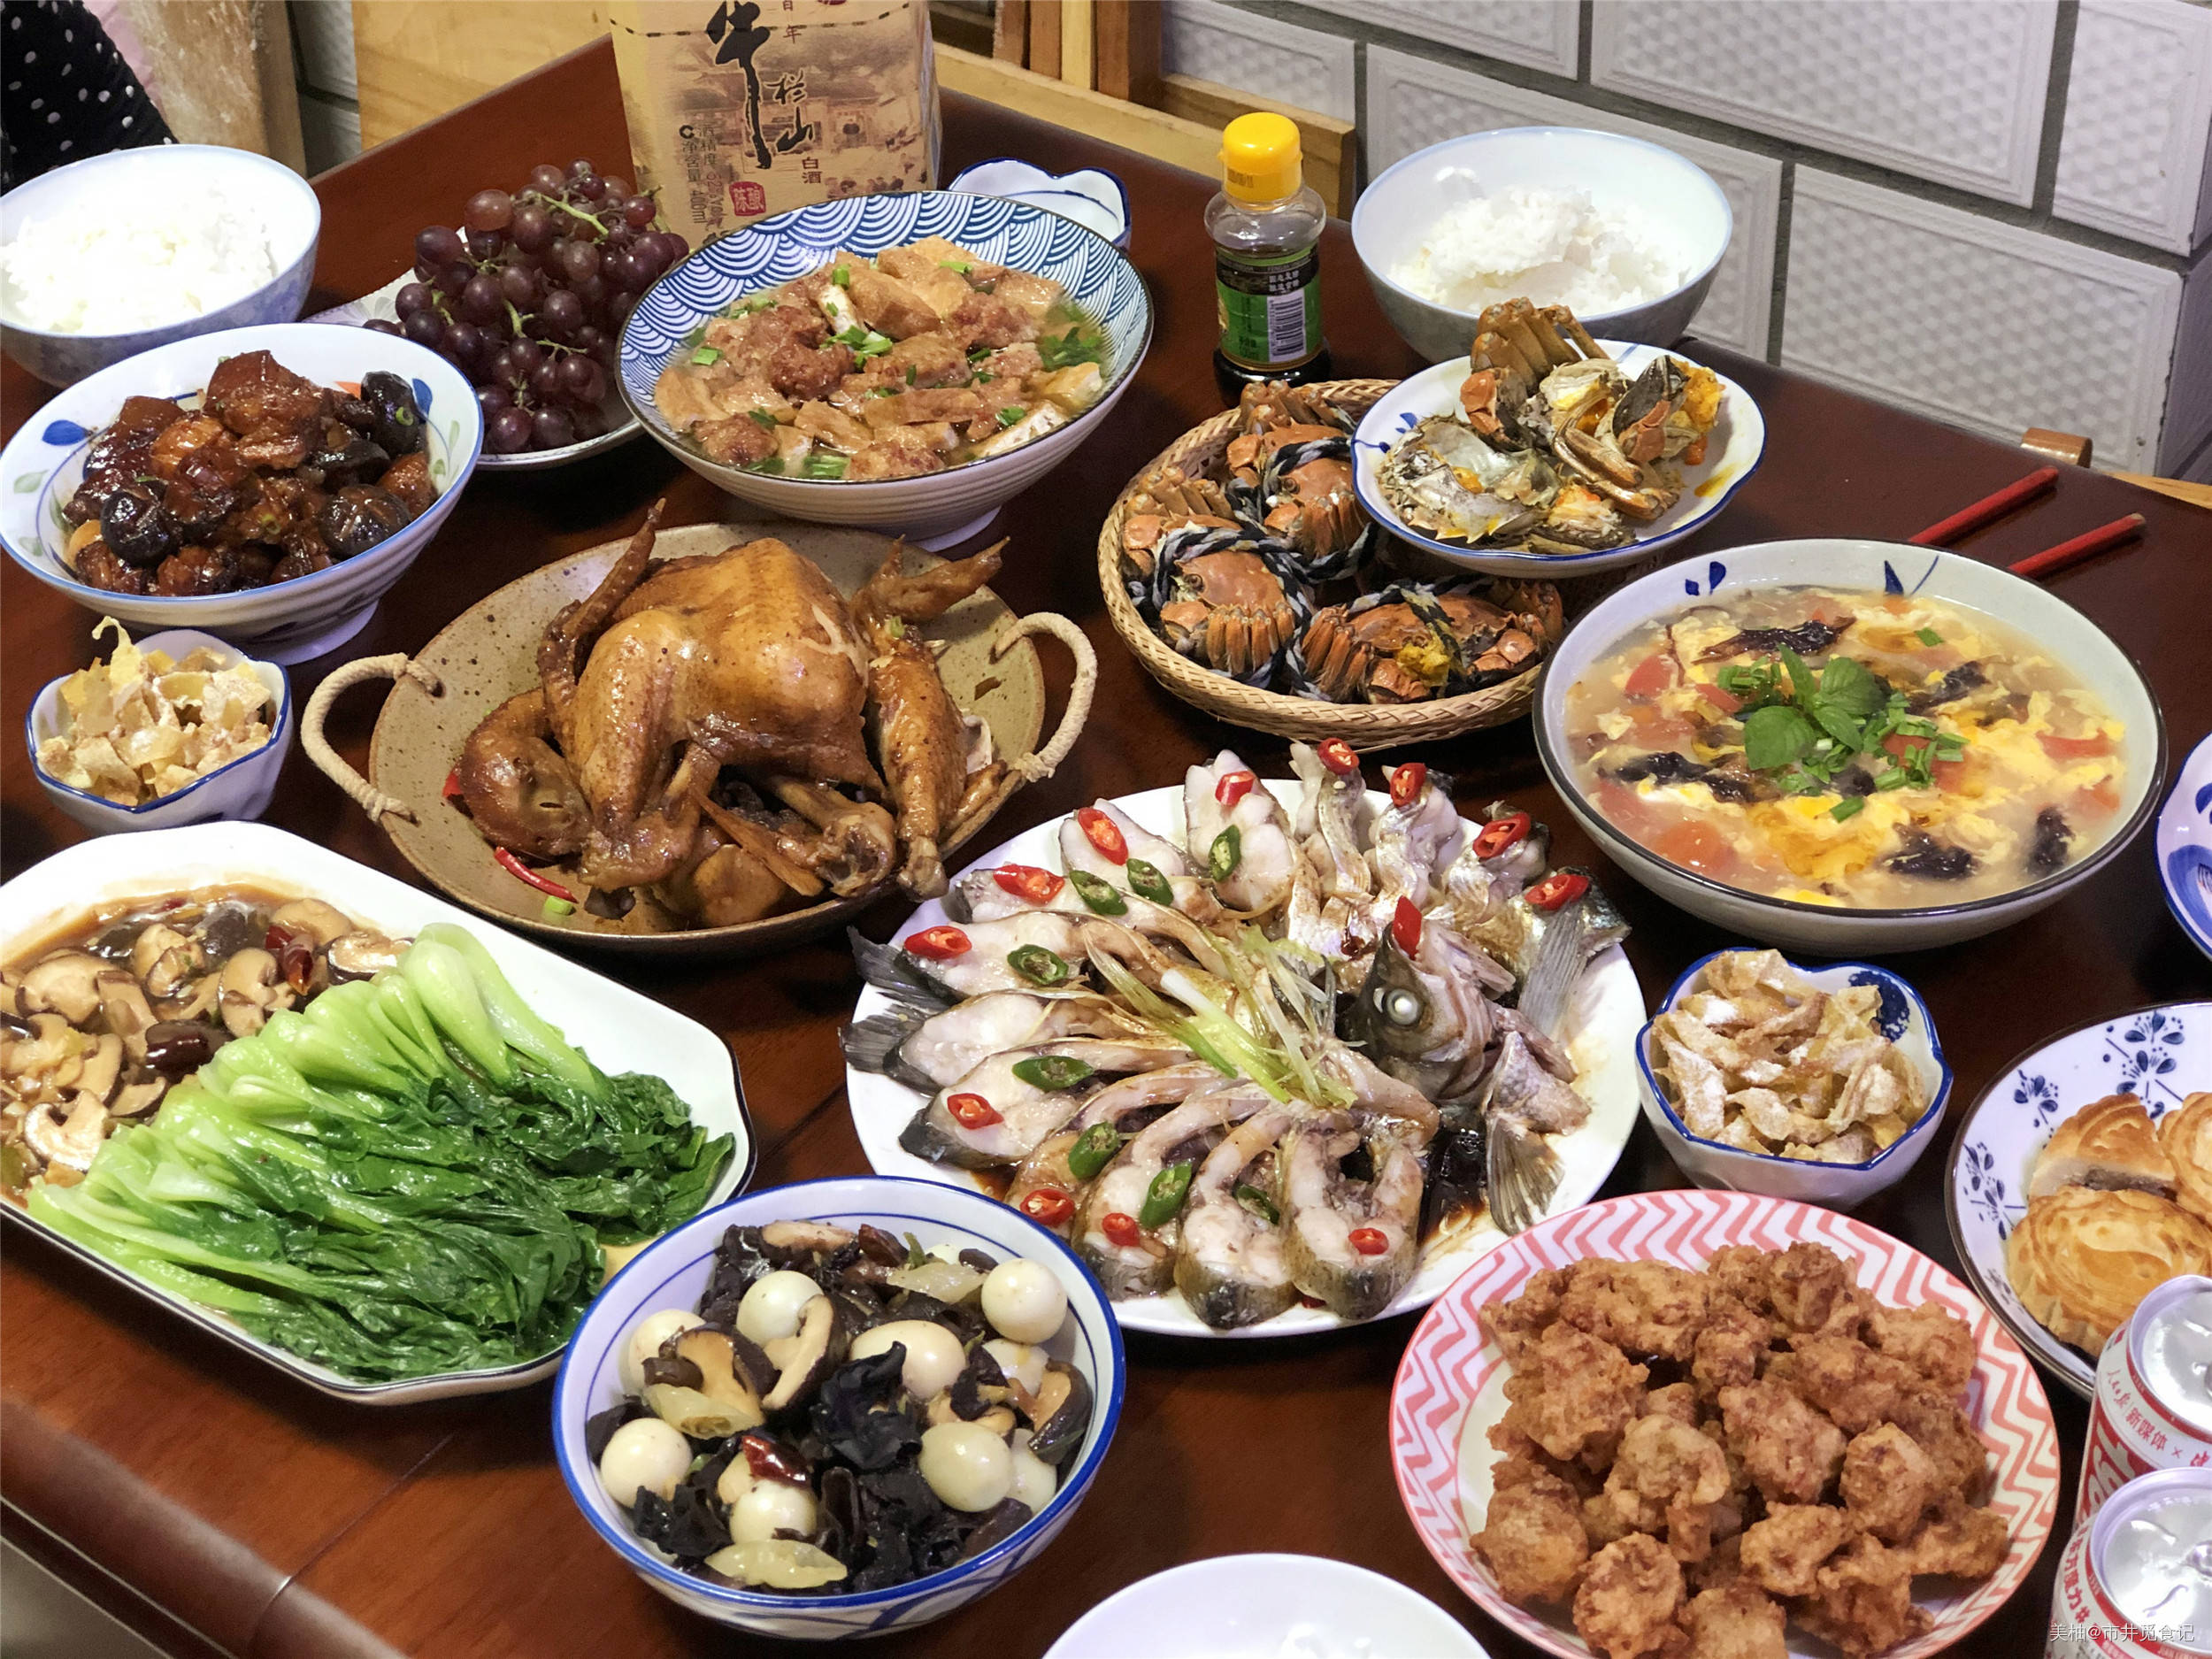 原创中秋节家宴,花300元做了7道菜,丰盛不浪费,比饭店吃强多了